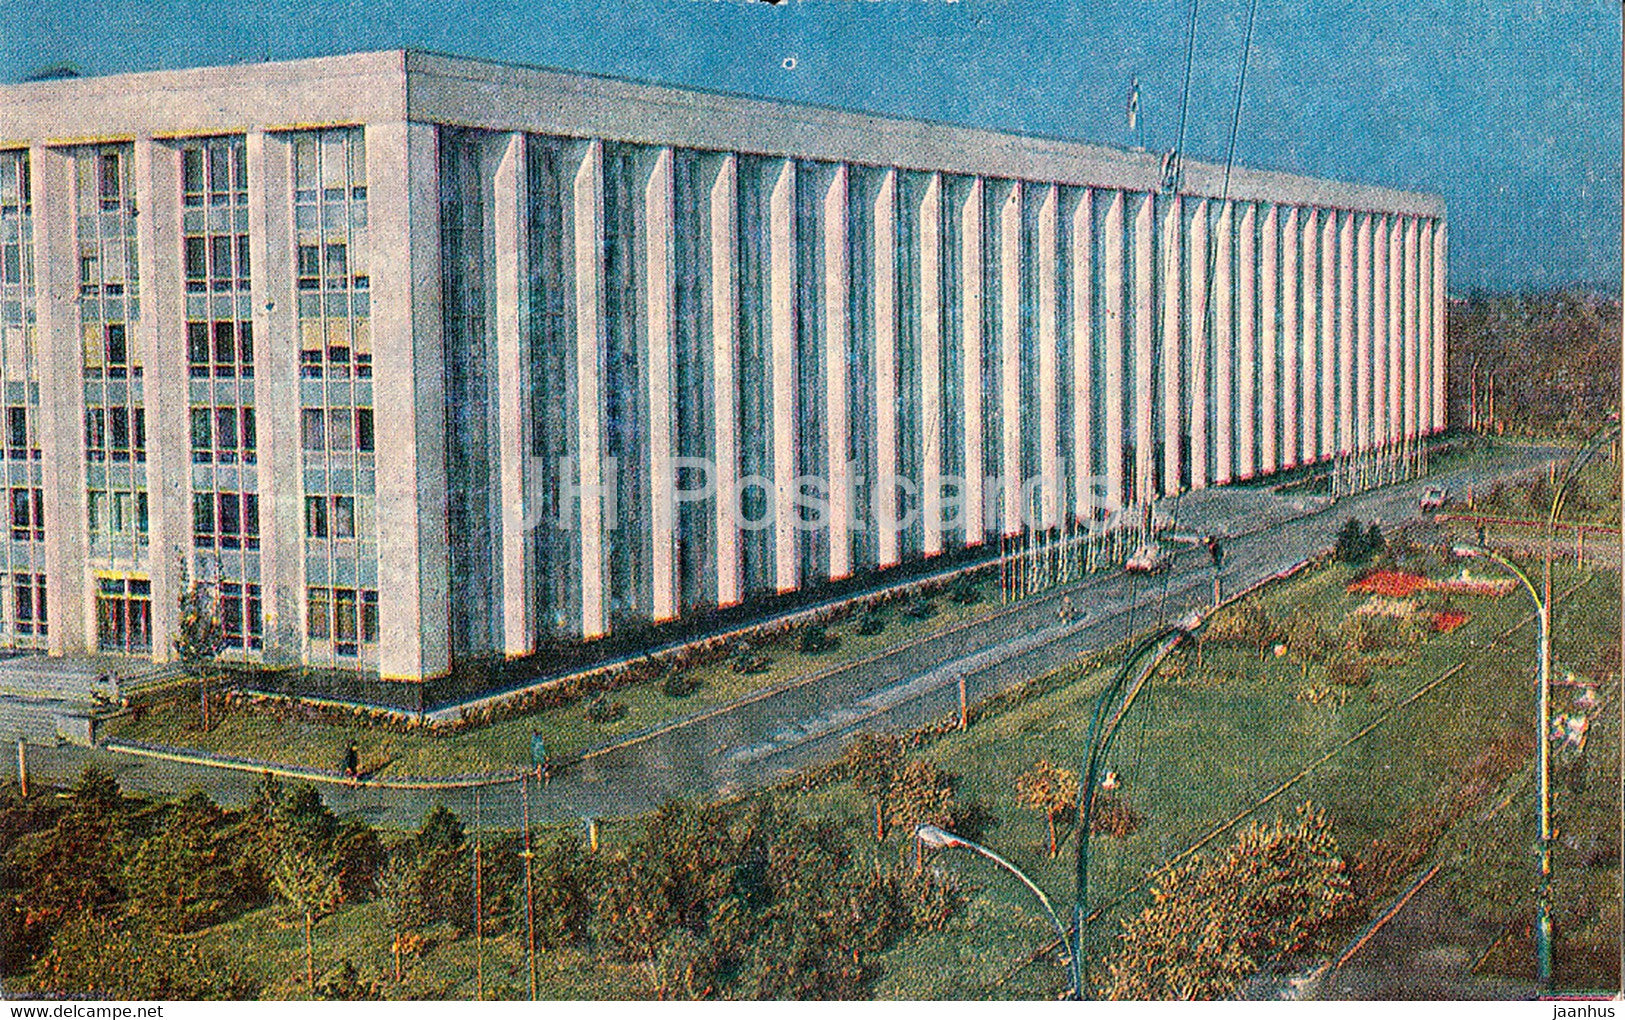 Chisinau - Government House - 1970 - Moldova USSR - unused - JH Postcards